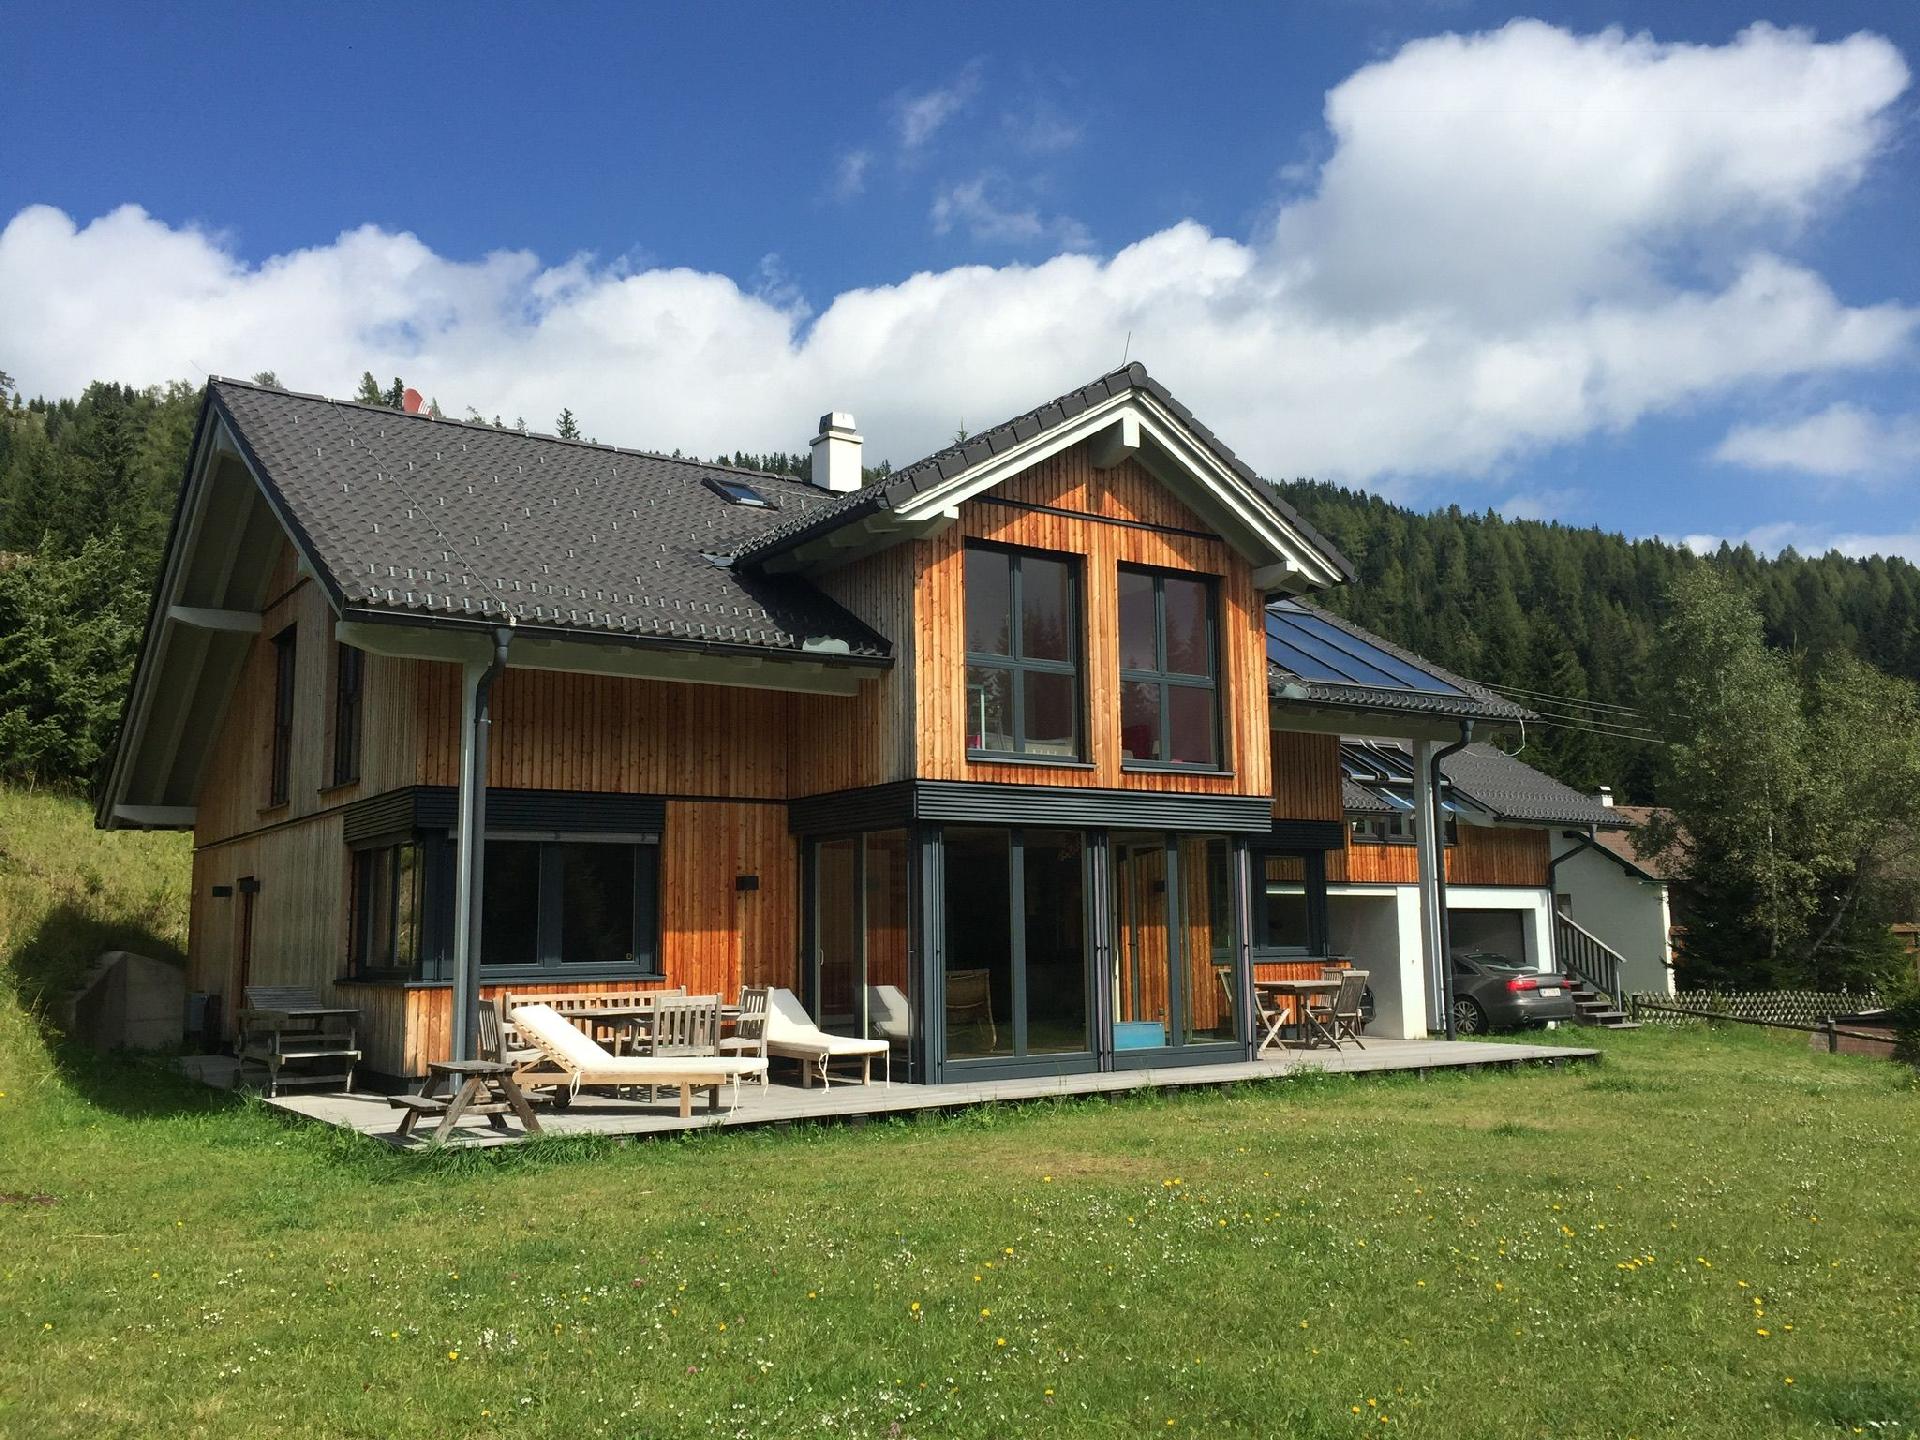 Ferienhaus in Flattnitz mit Garten, Grill und Terr  in Österreich